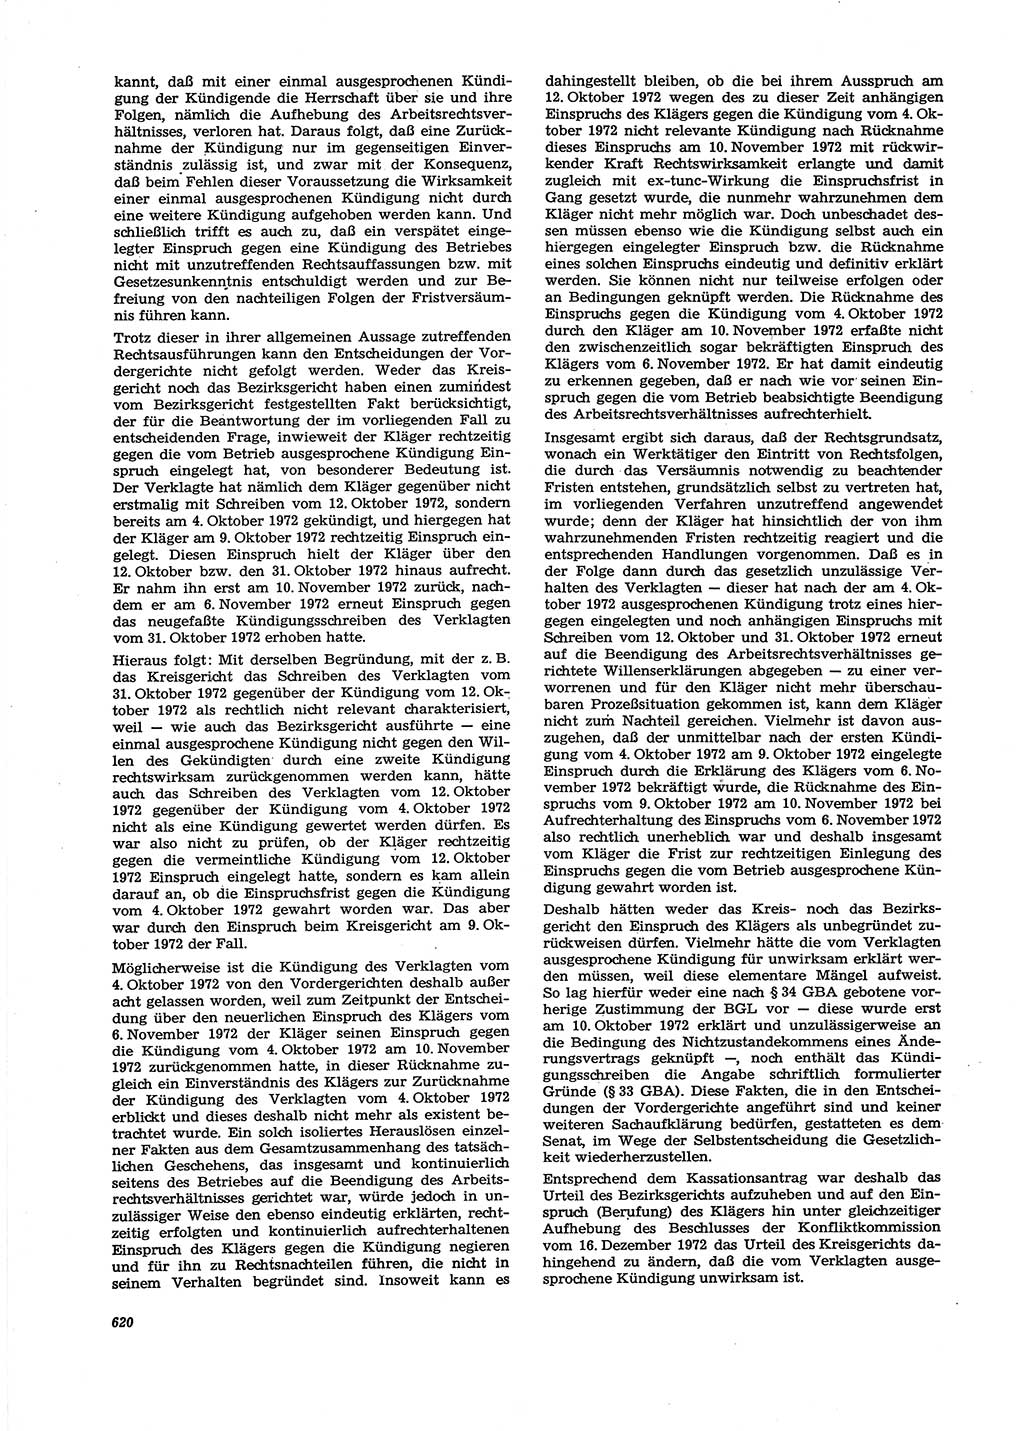 Neue Justiz (NJ), Zeitschrift für Recht und Rechtswissenschaft [Deutsche Demokratische Republik (DDR)], 27. Jahrgang 1973, Seite 620 (NJ DDR 1973, S. 620)